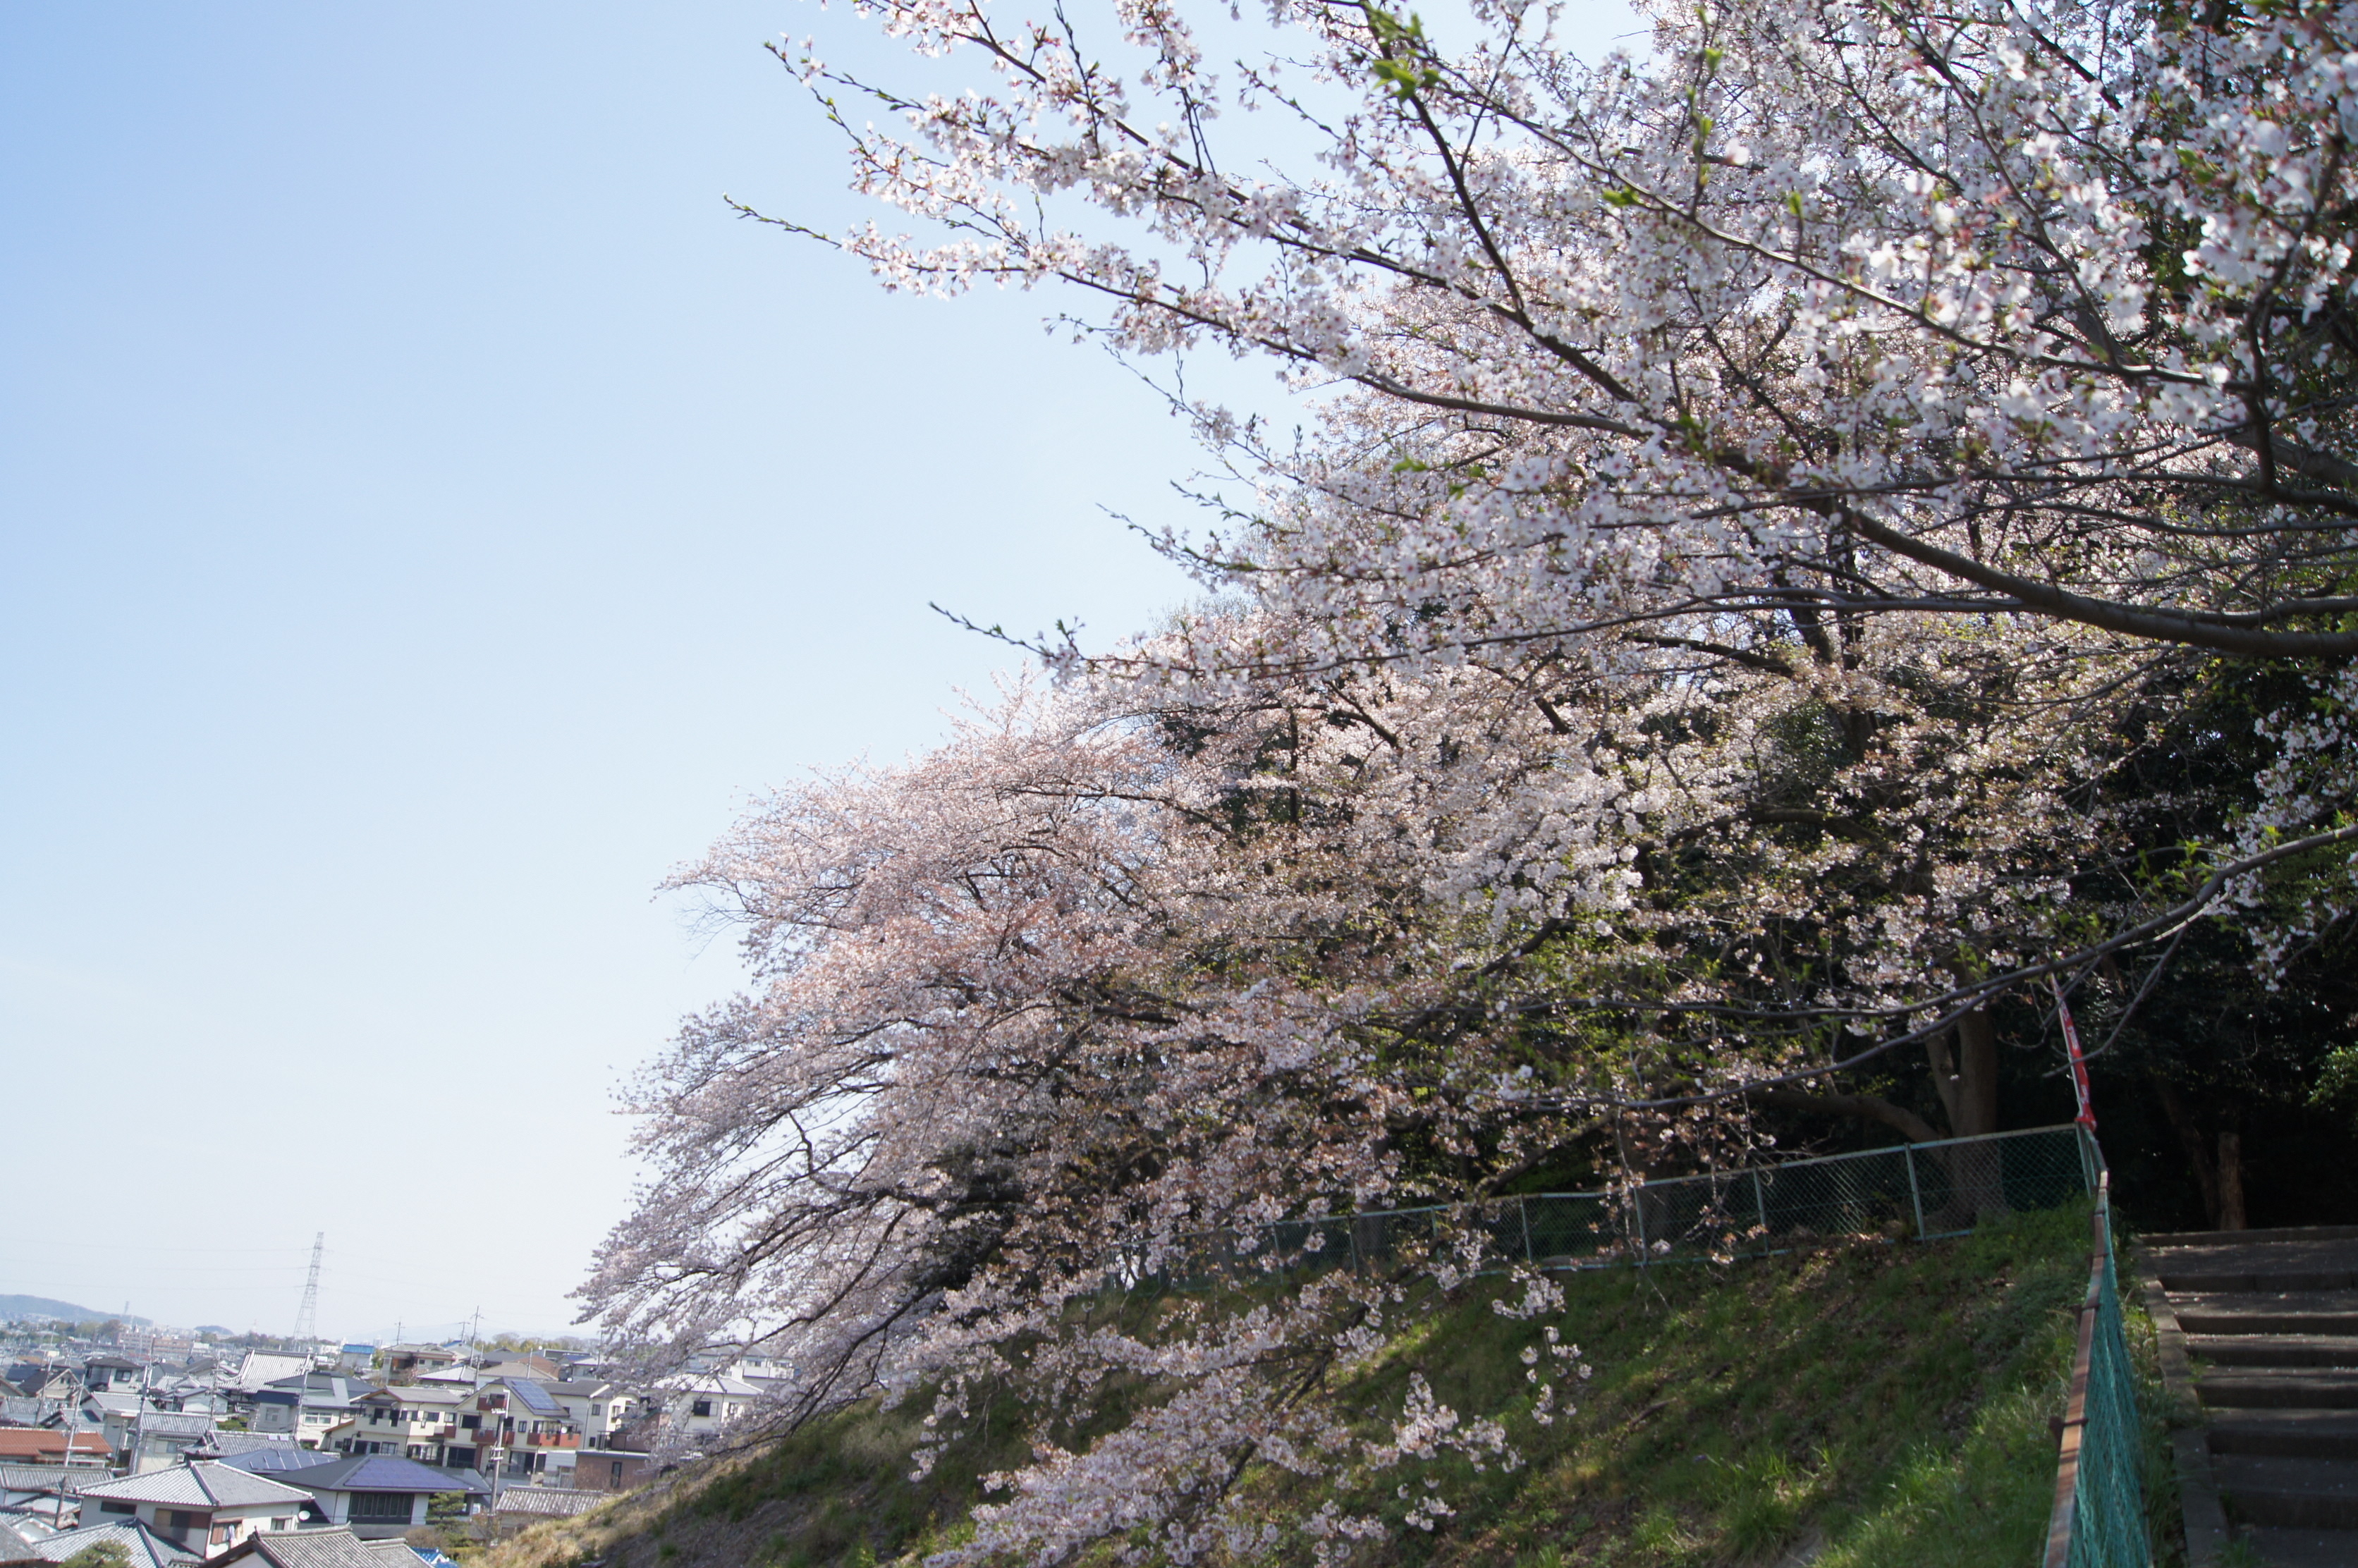 御殿山公園の桜の様子